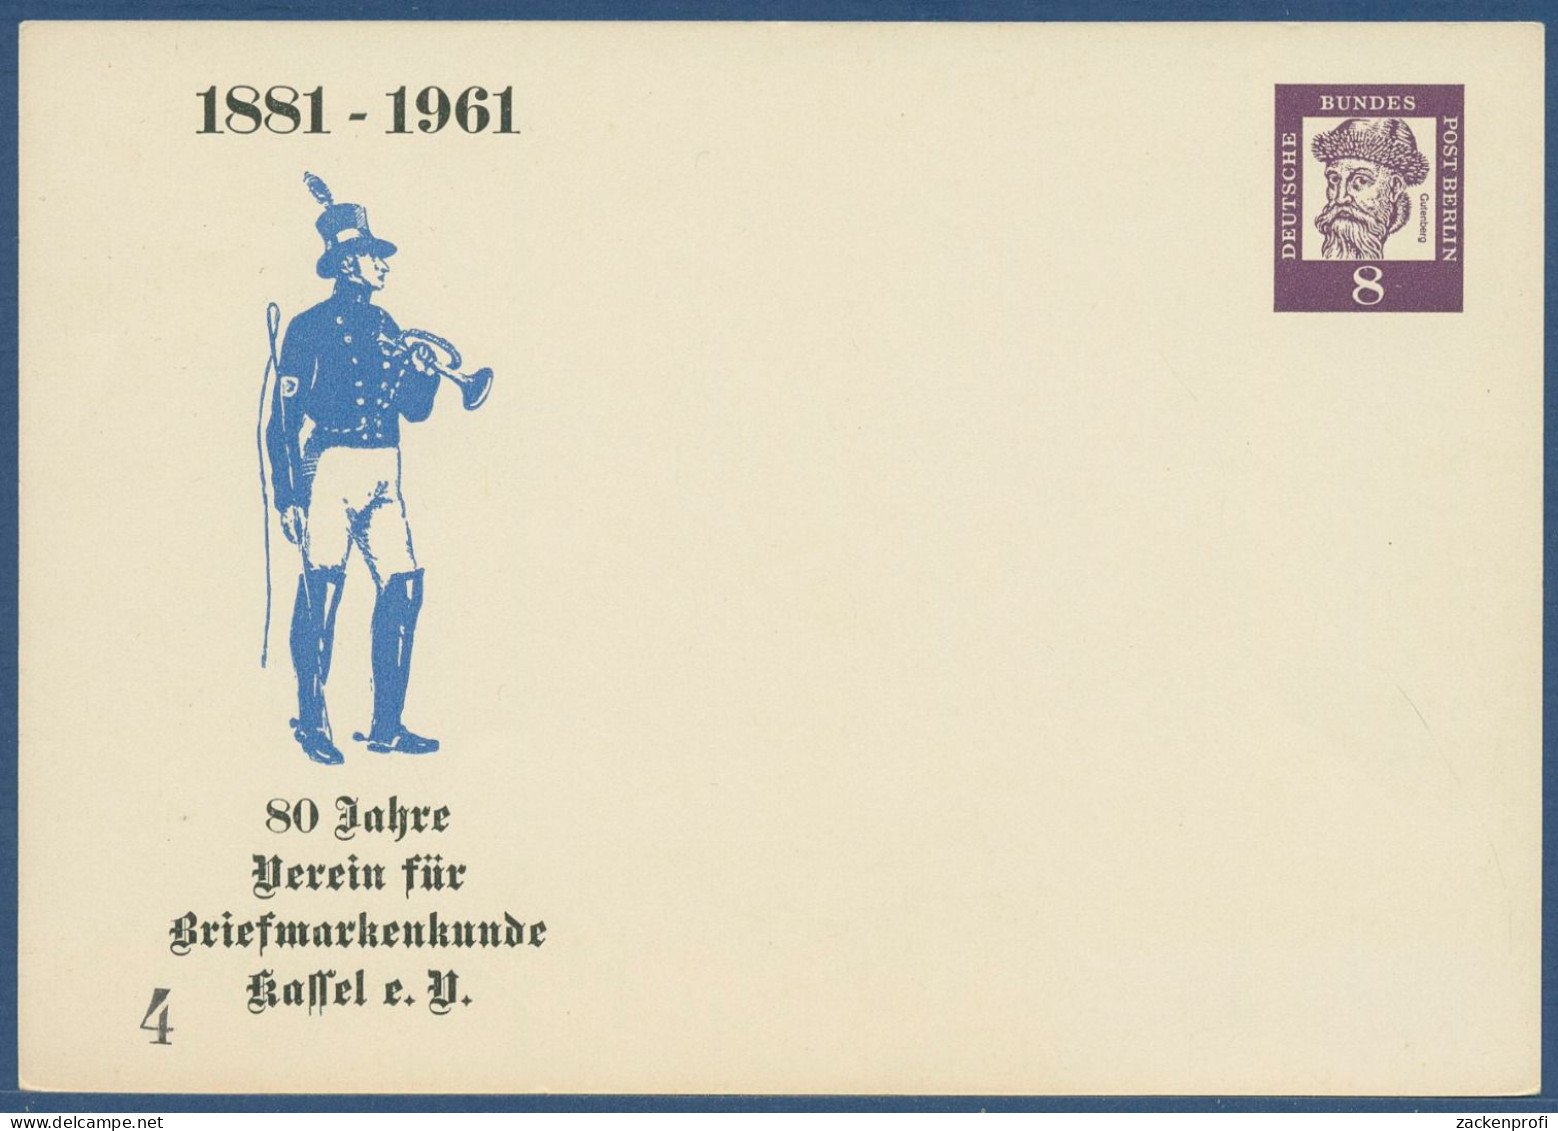 Berlin 1961 Bedeutende Deutsche, Privatpostkarte PP 26/1 Ungebraucht (X41019) - Private Postcards - Mint